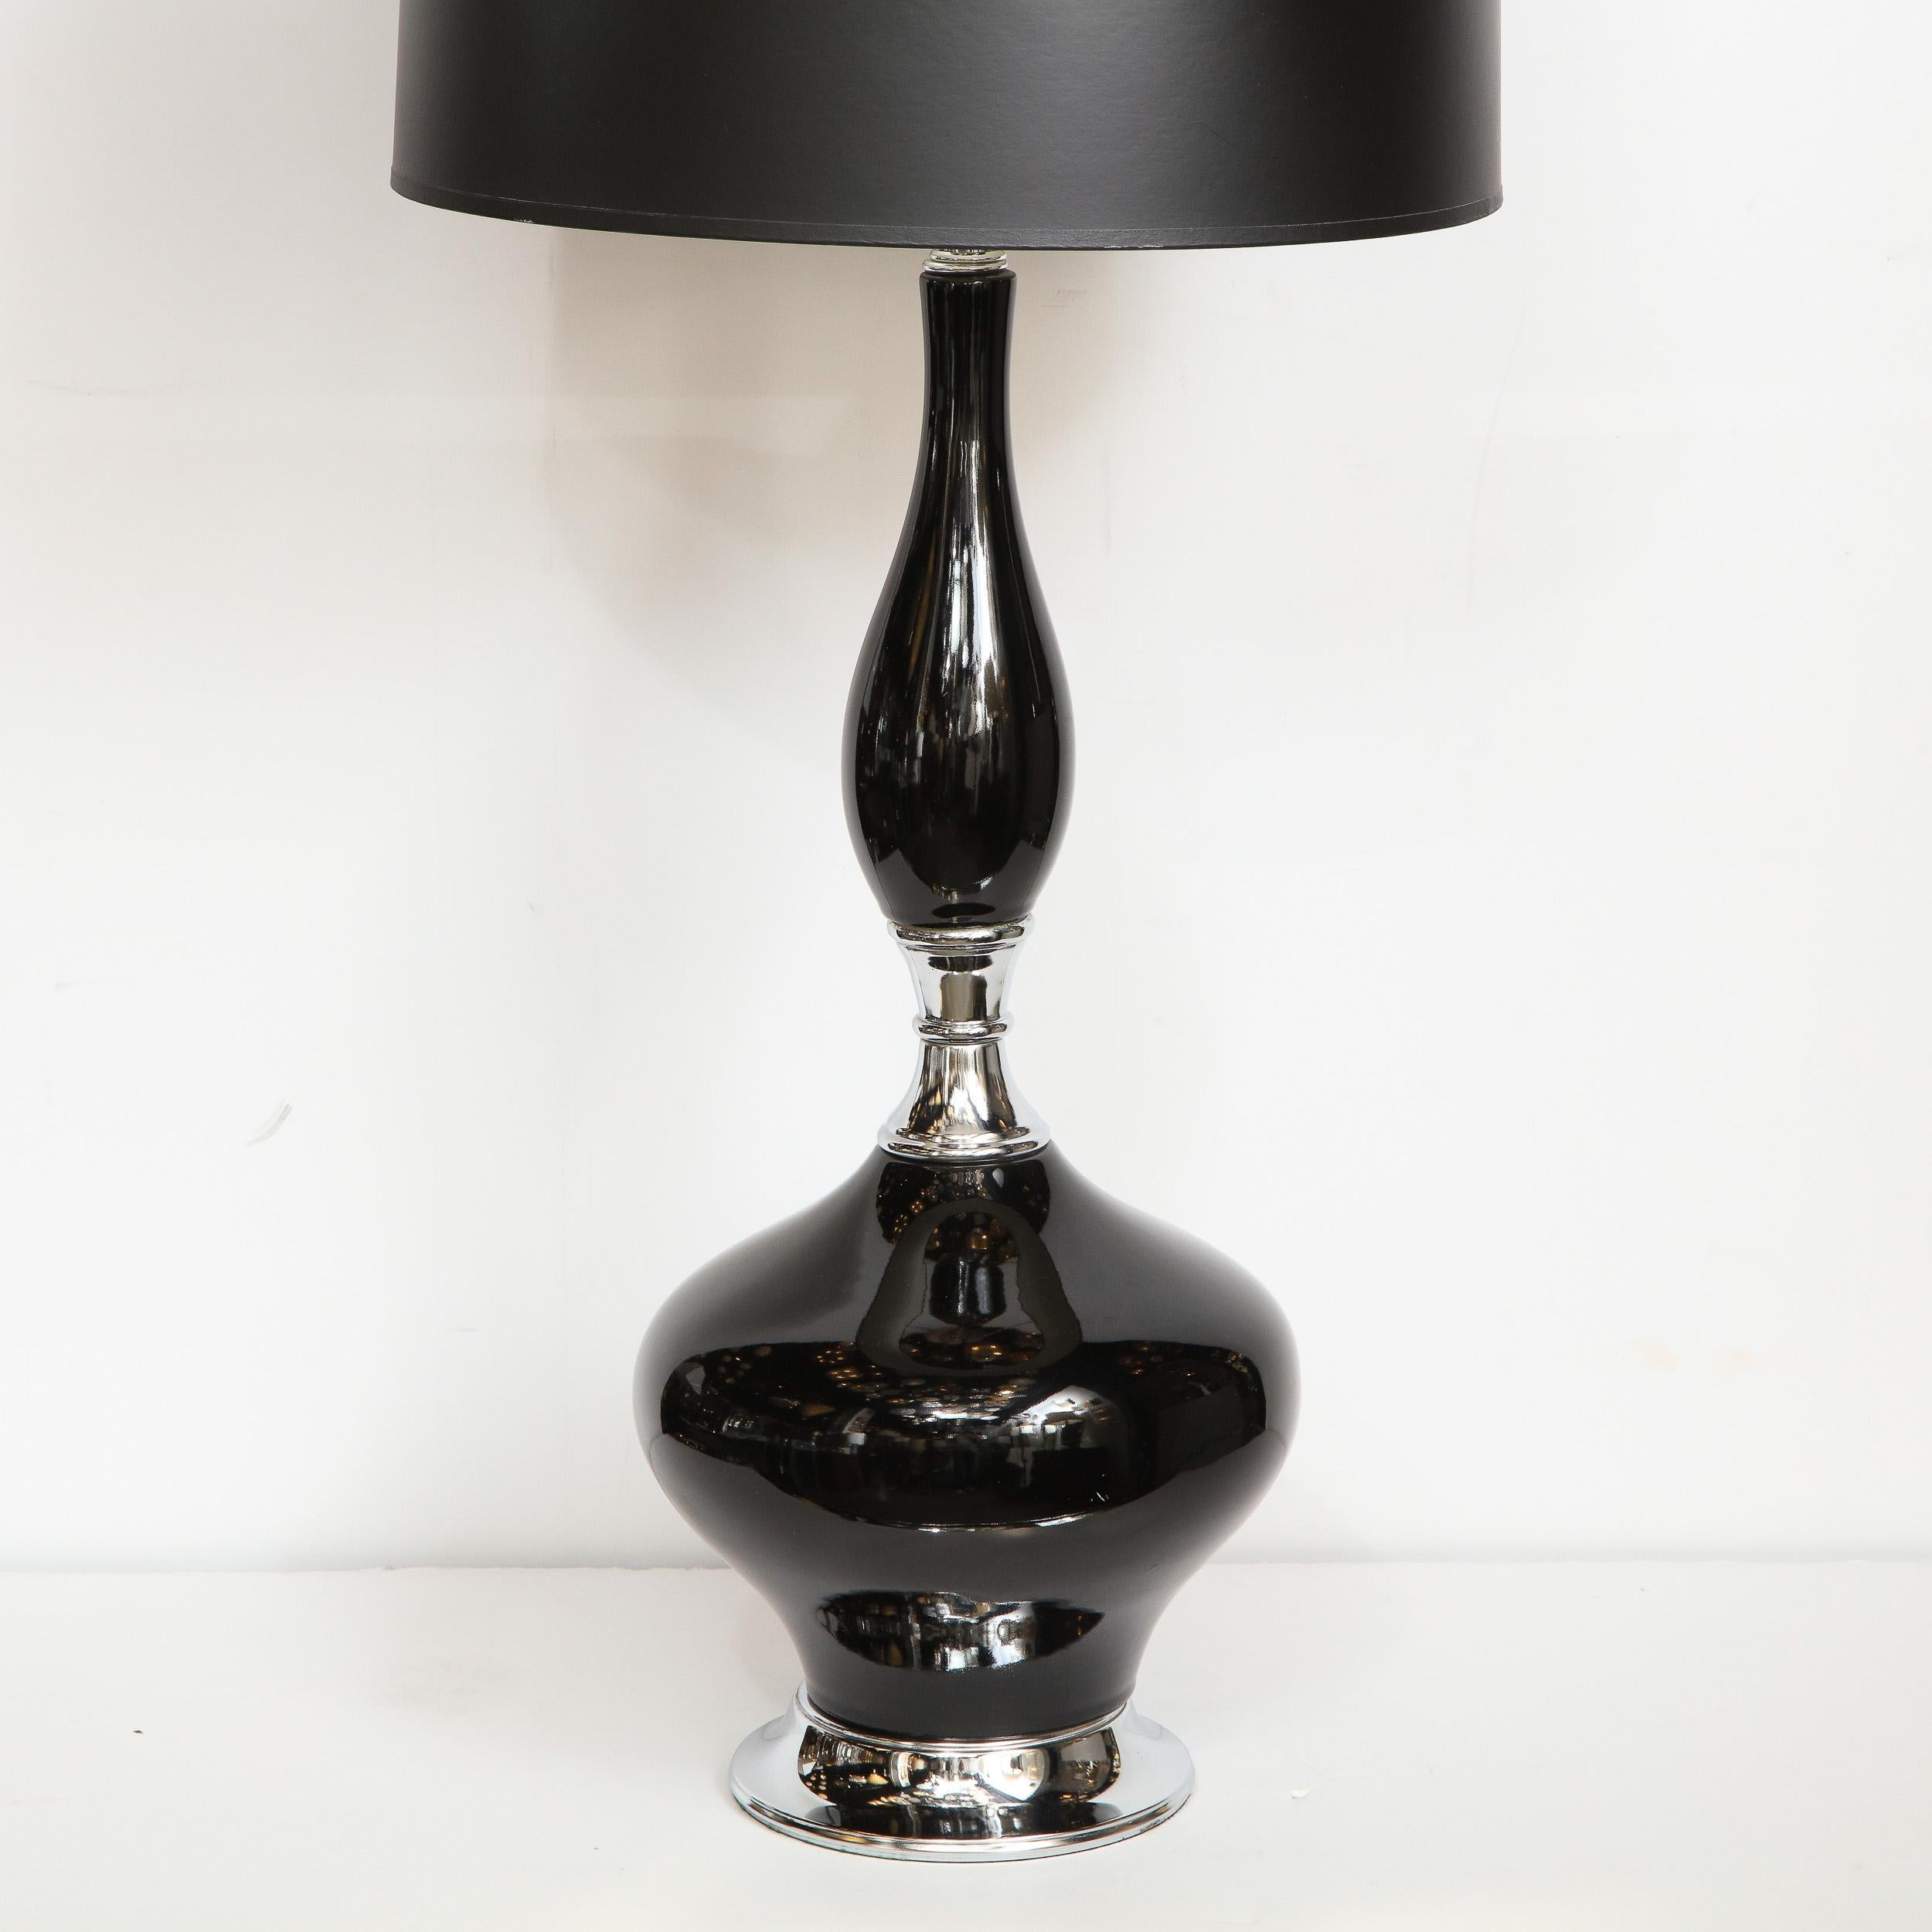 Cette belle lampe en céramique de style Mid-Century Modern a été réalisée aux États-Unis, vers 1960. Il présente une forme organique protubérante finie dans une glaçure noire lustrée qui s'étend vers le haut à partir d'une base chromée. Élégante,